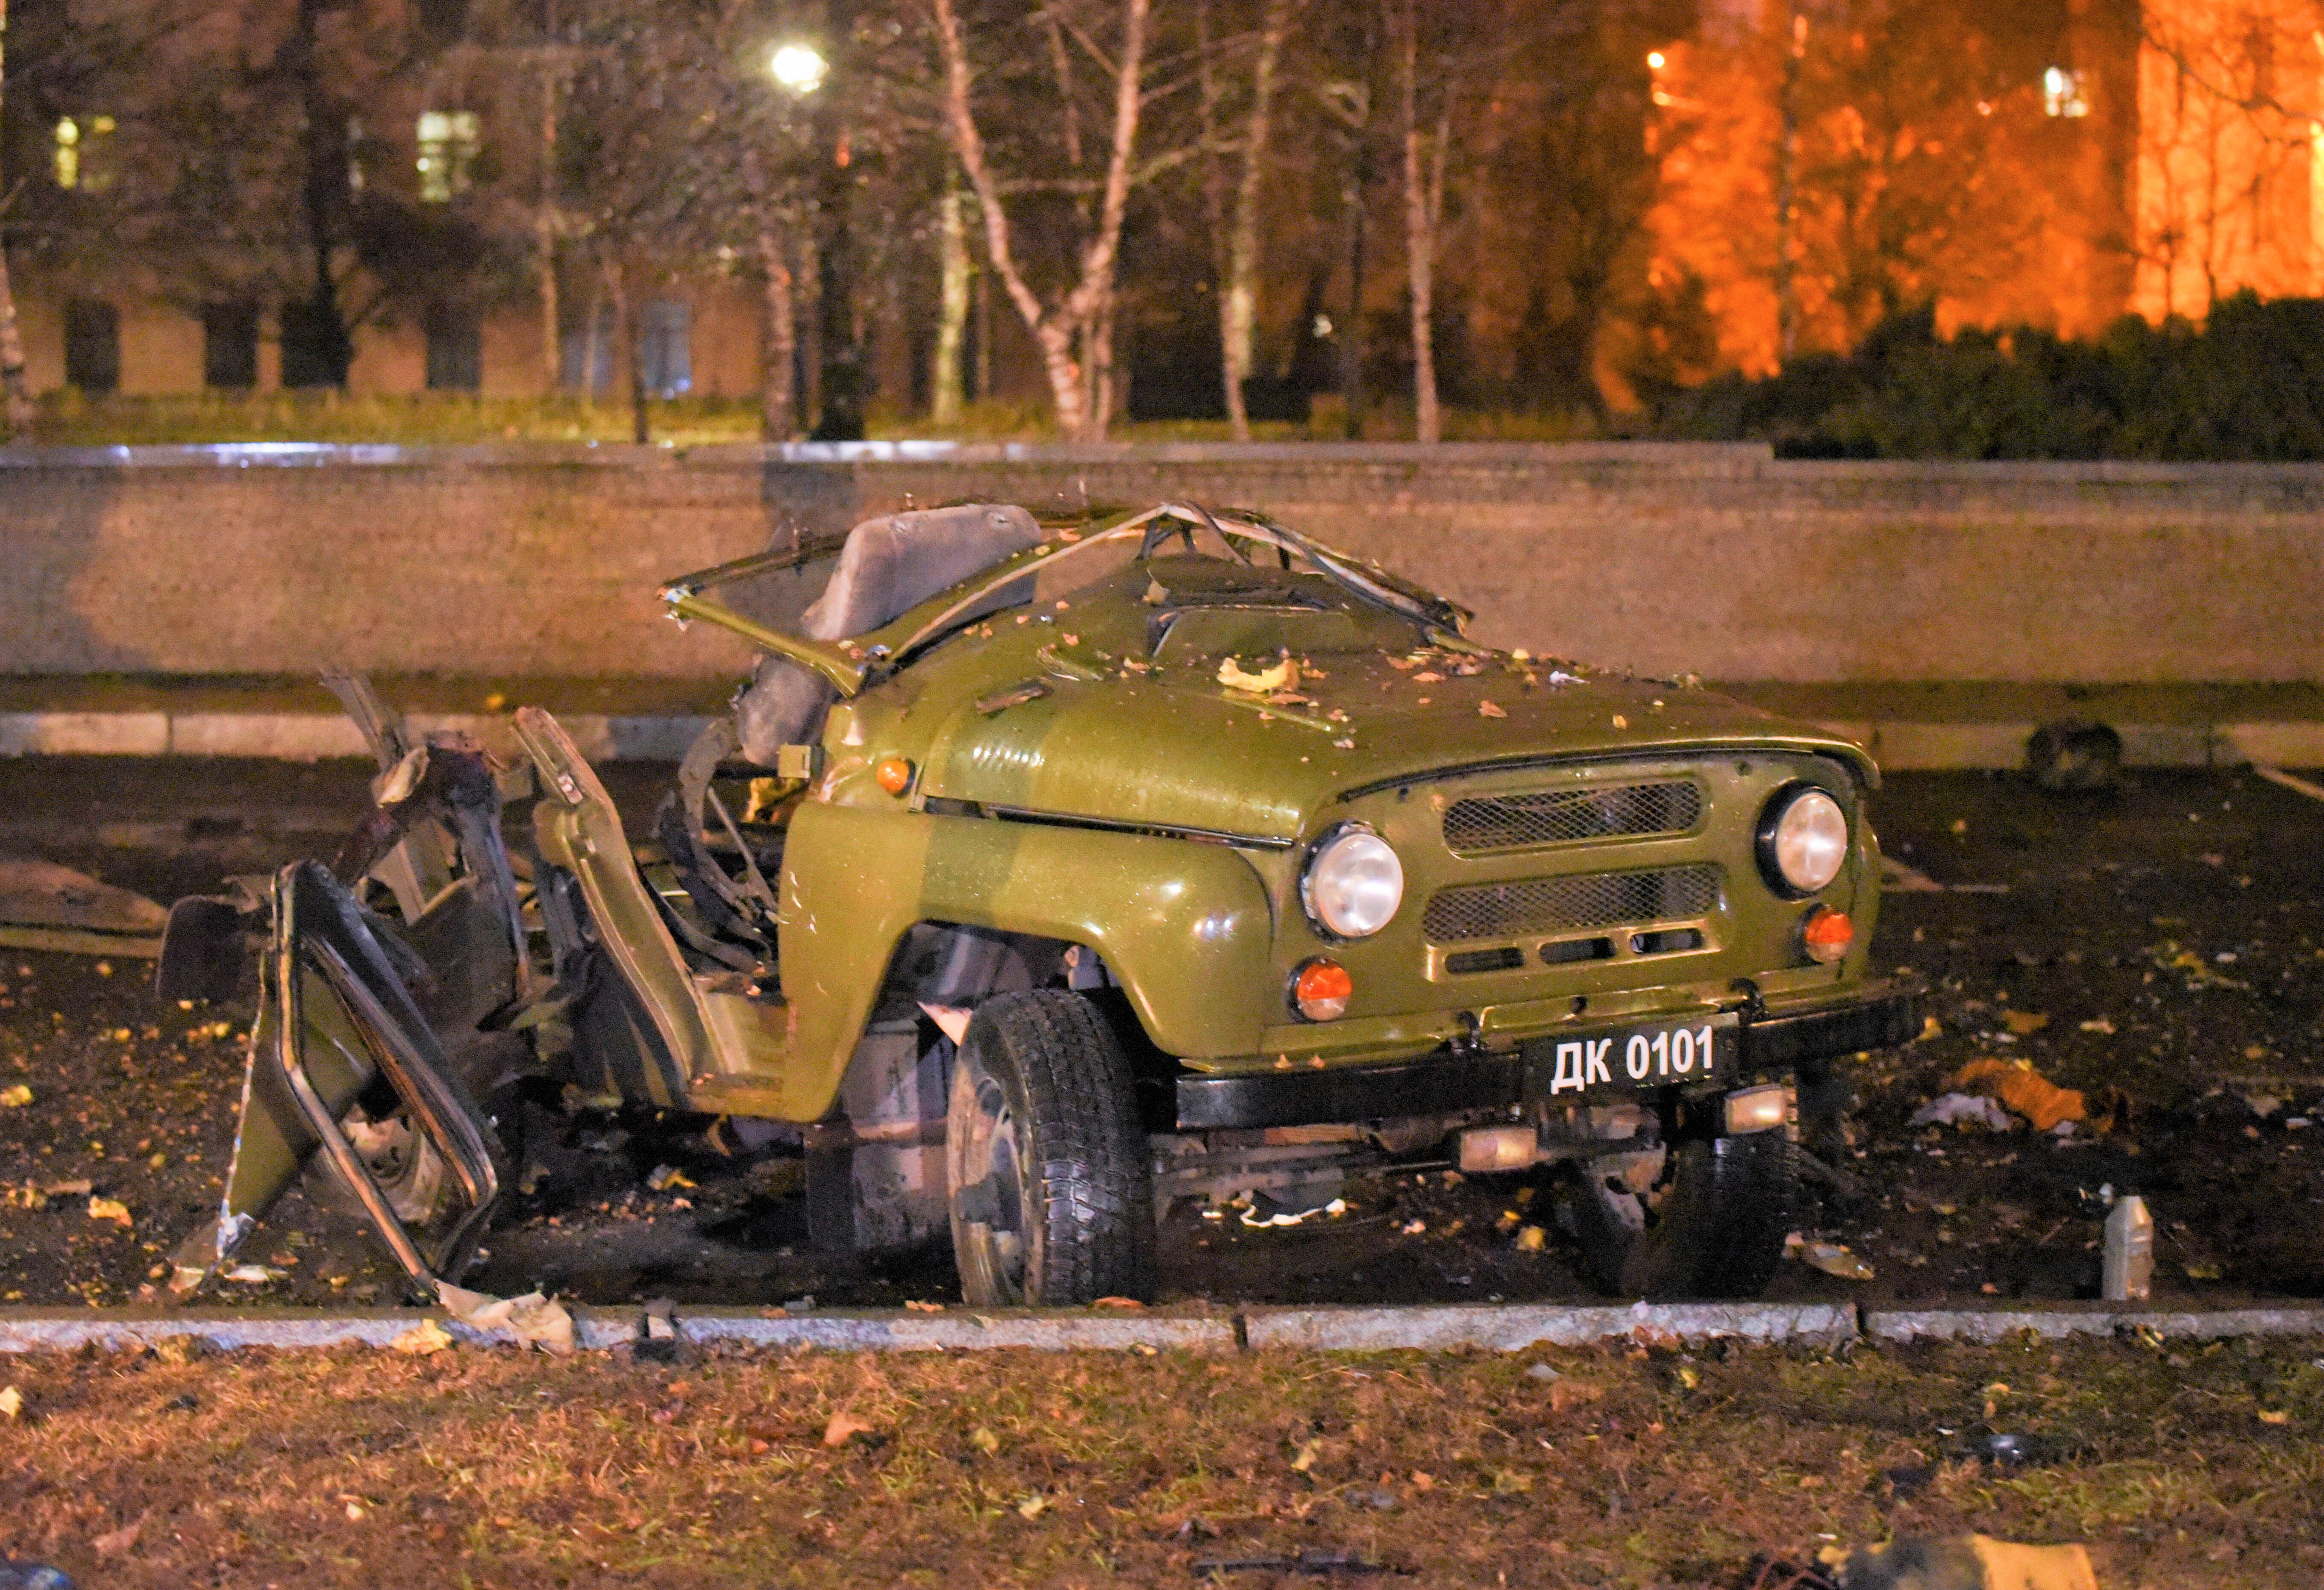 Autobombe! Wagen mit russischen Offizieren und Geheimdienstlern explodiert - Putin verliert erneut hochrangiges Personal bei Anschlag!